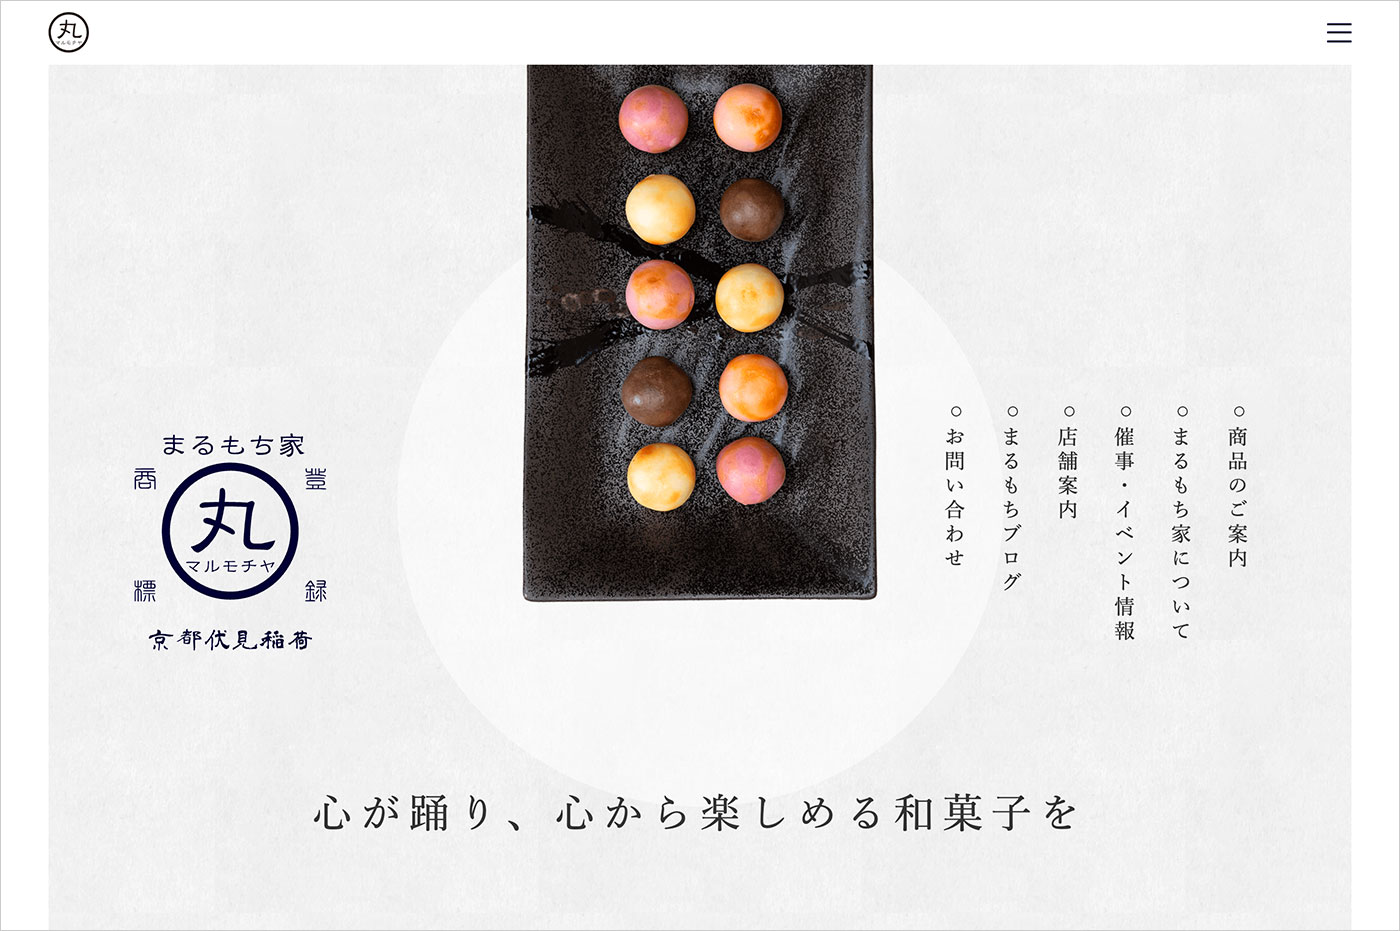 京都の和菓子でお土産やギフトにおすすめな伏見稲荷のまるもち家ウェブサイトの画面キャプチャ画像